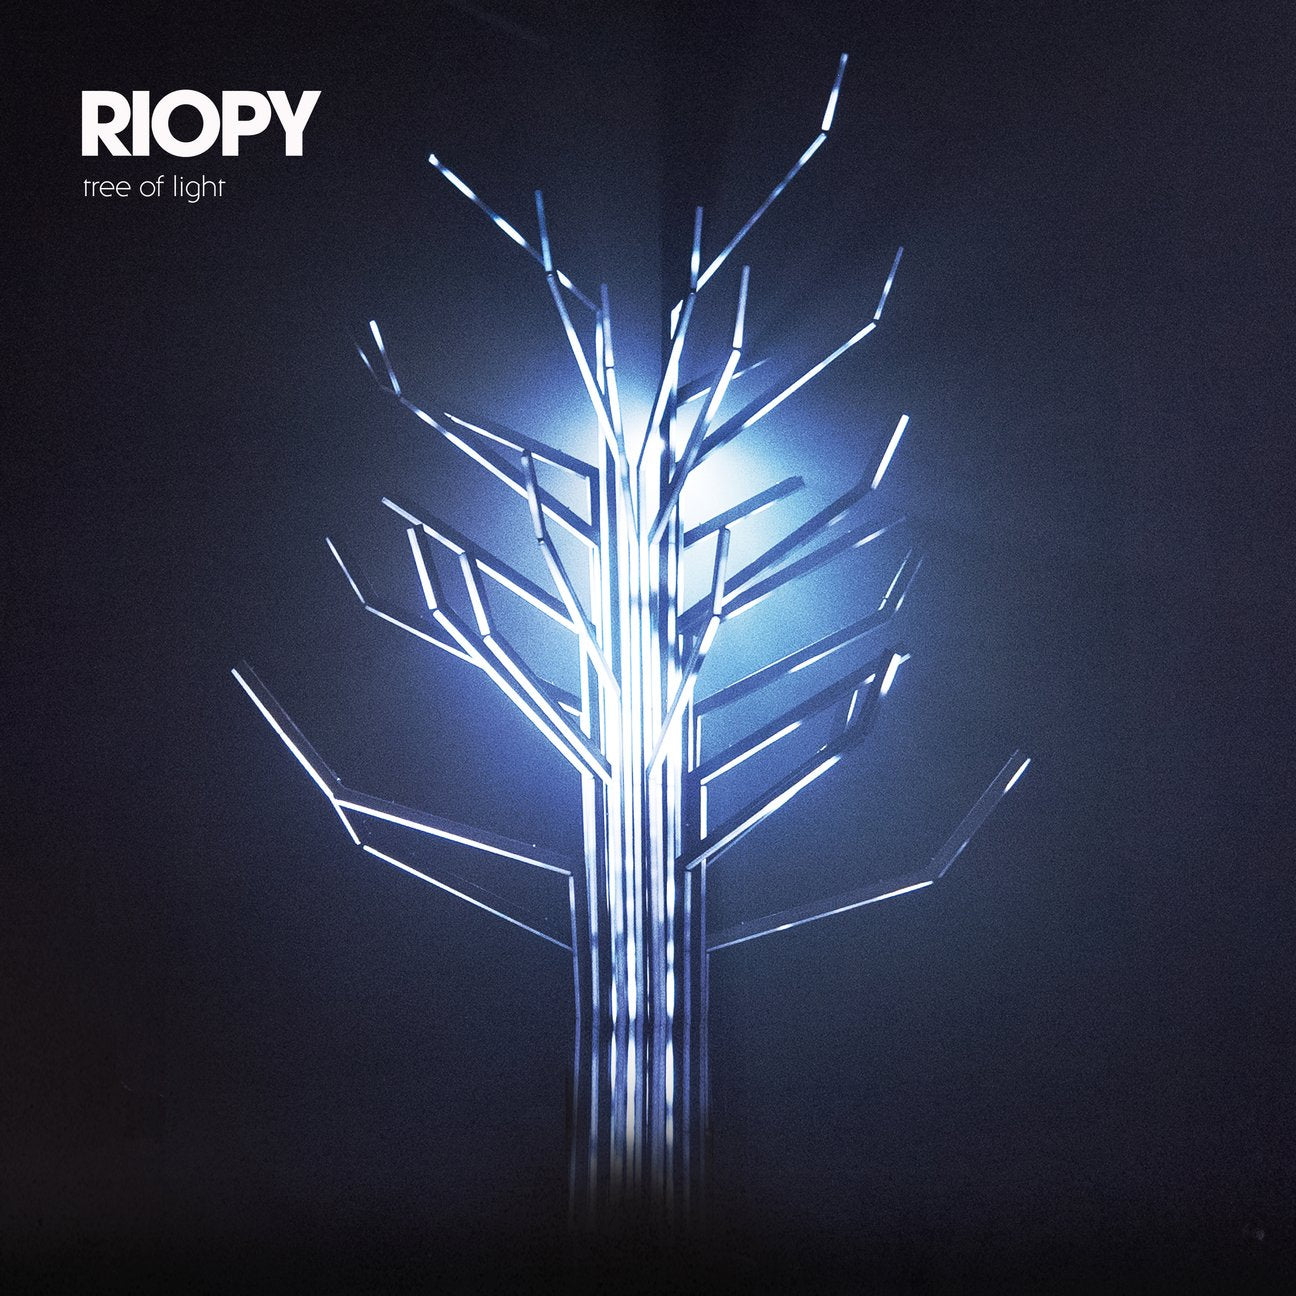 Summer Night sheet music from RIOPY's Tree of Light album